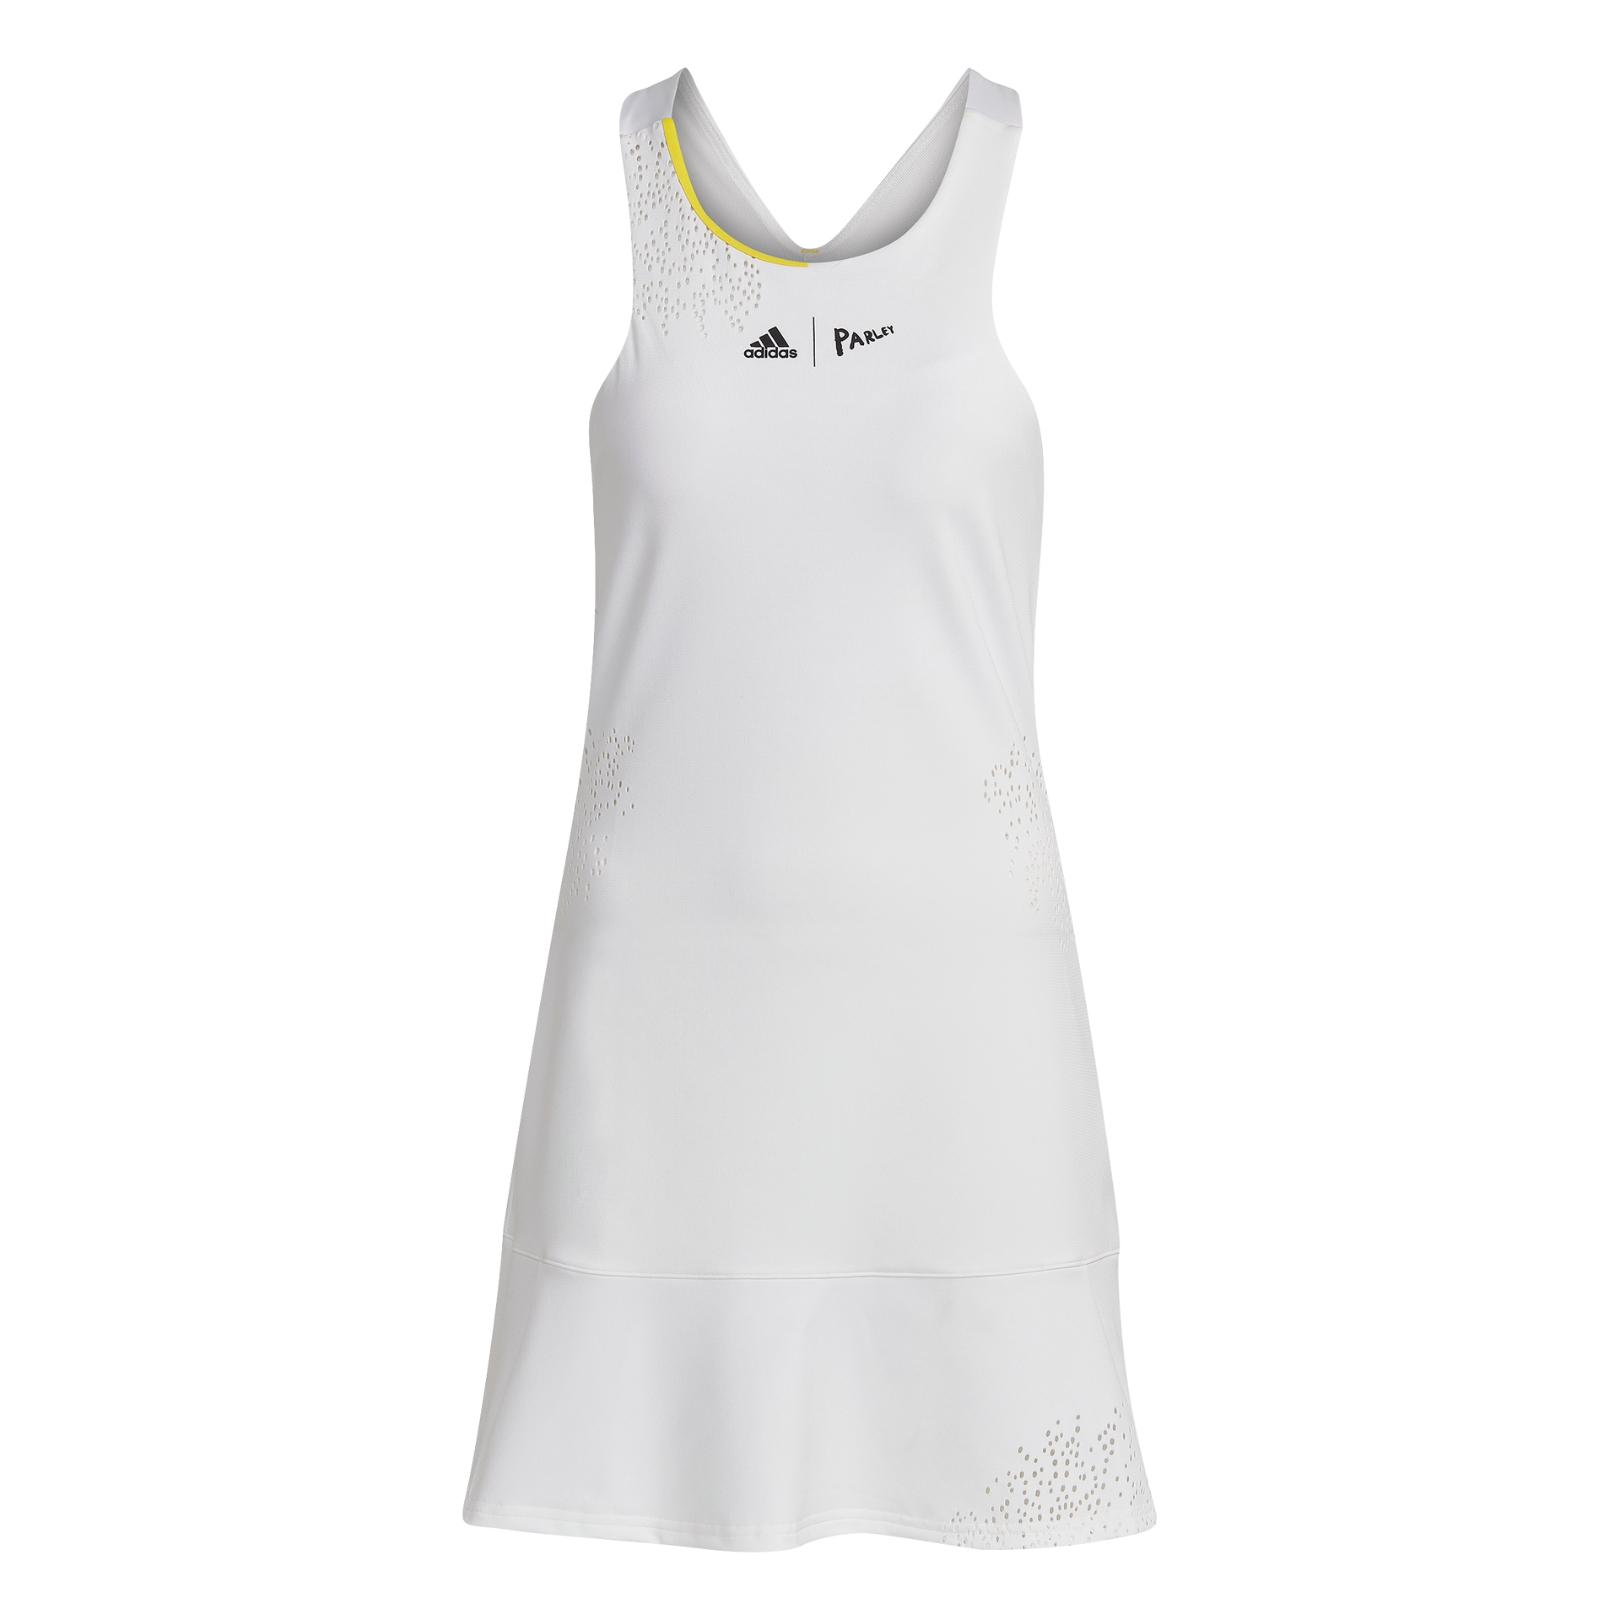 replika Tøj at tilbagetrække Adidas London Y-Dress White | Padel kjole » Køb nu